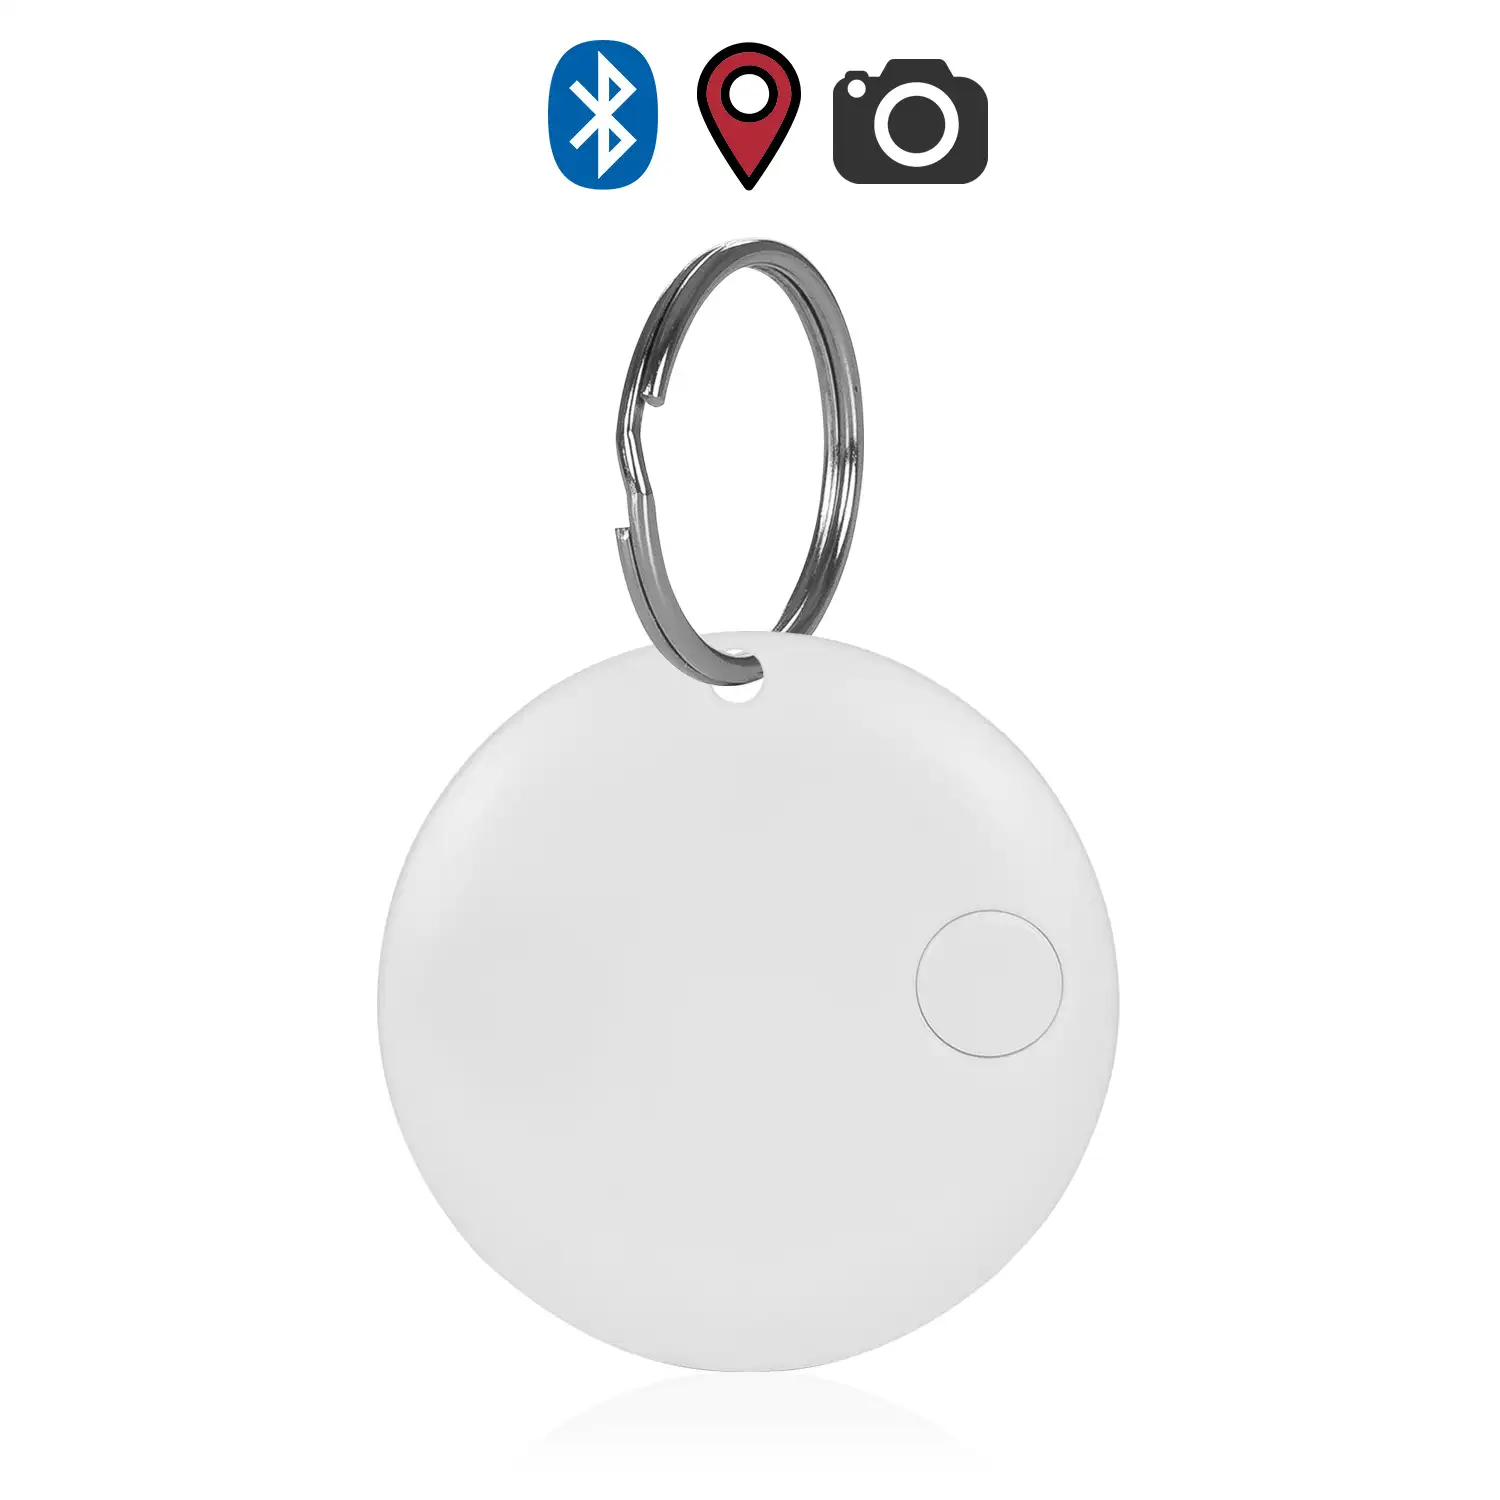 Llavero localizador redondo Bluetooth 4.0 multifunción, con indicador GPS de última localización. Para mascotas, llaves, maletas, etc.